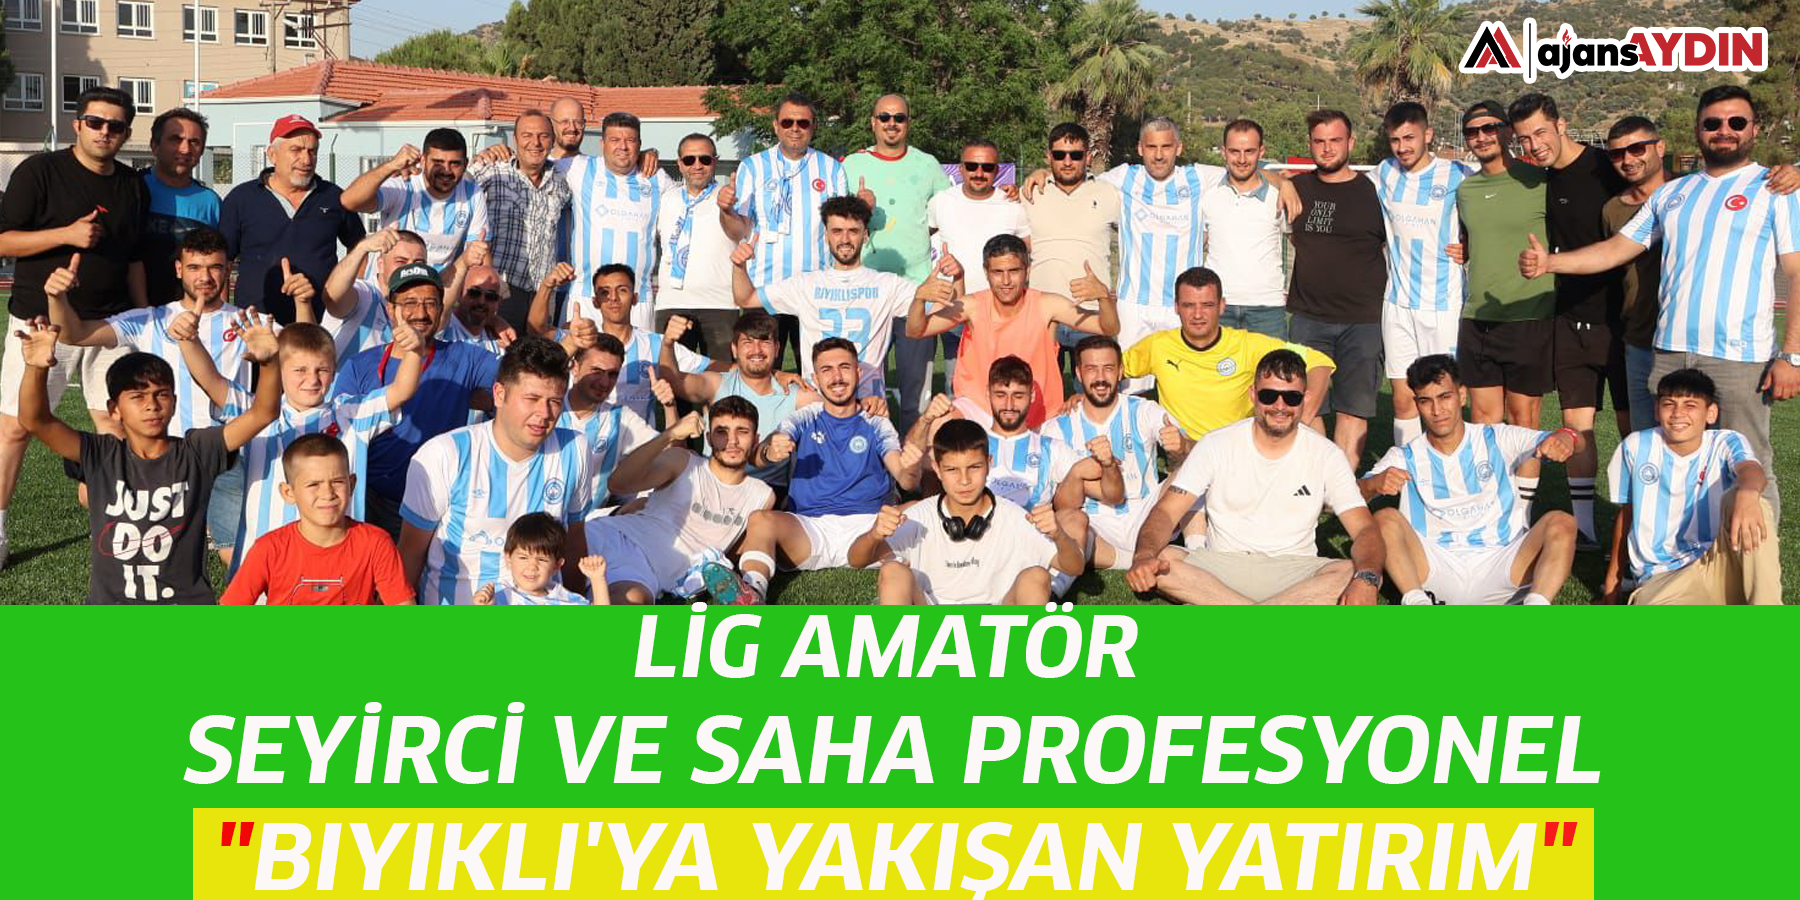 Lig amatör Seyirci ve saha profesyonel "Bıyıklı'ya yakışan yatırım"